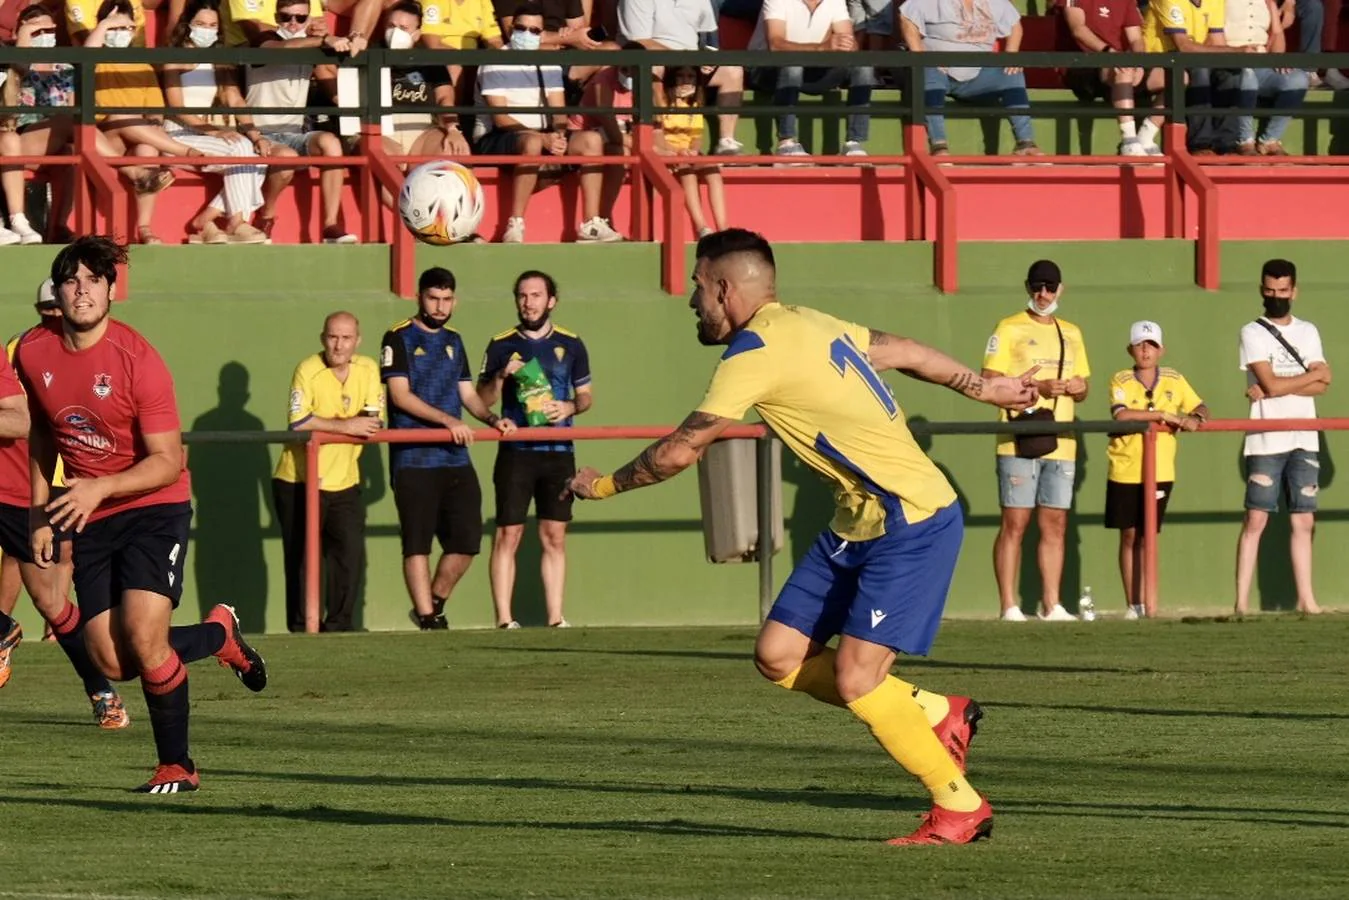 FOTOS: El primer partido del Cádiz - Barbate, en imágenes